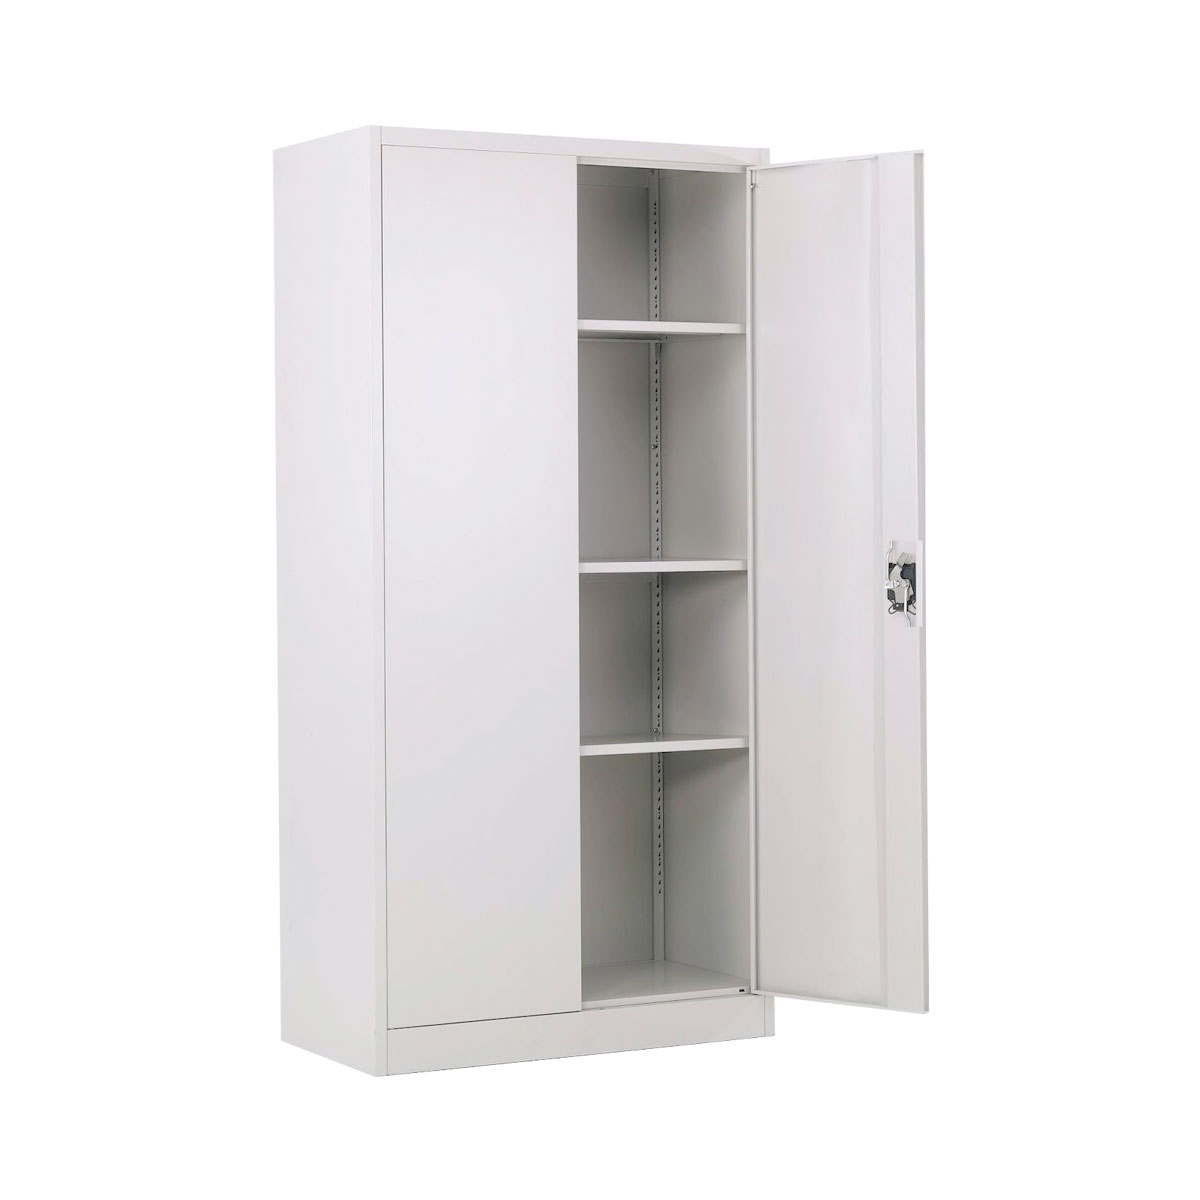 cabinet-full-height-swing-door.jpg